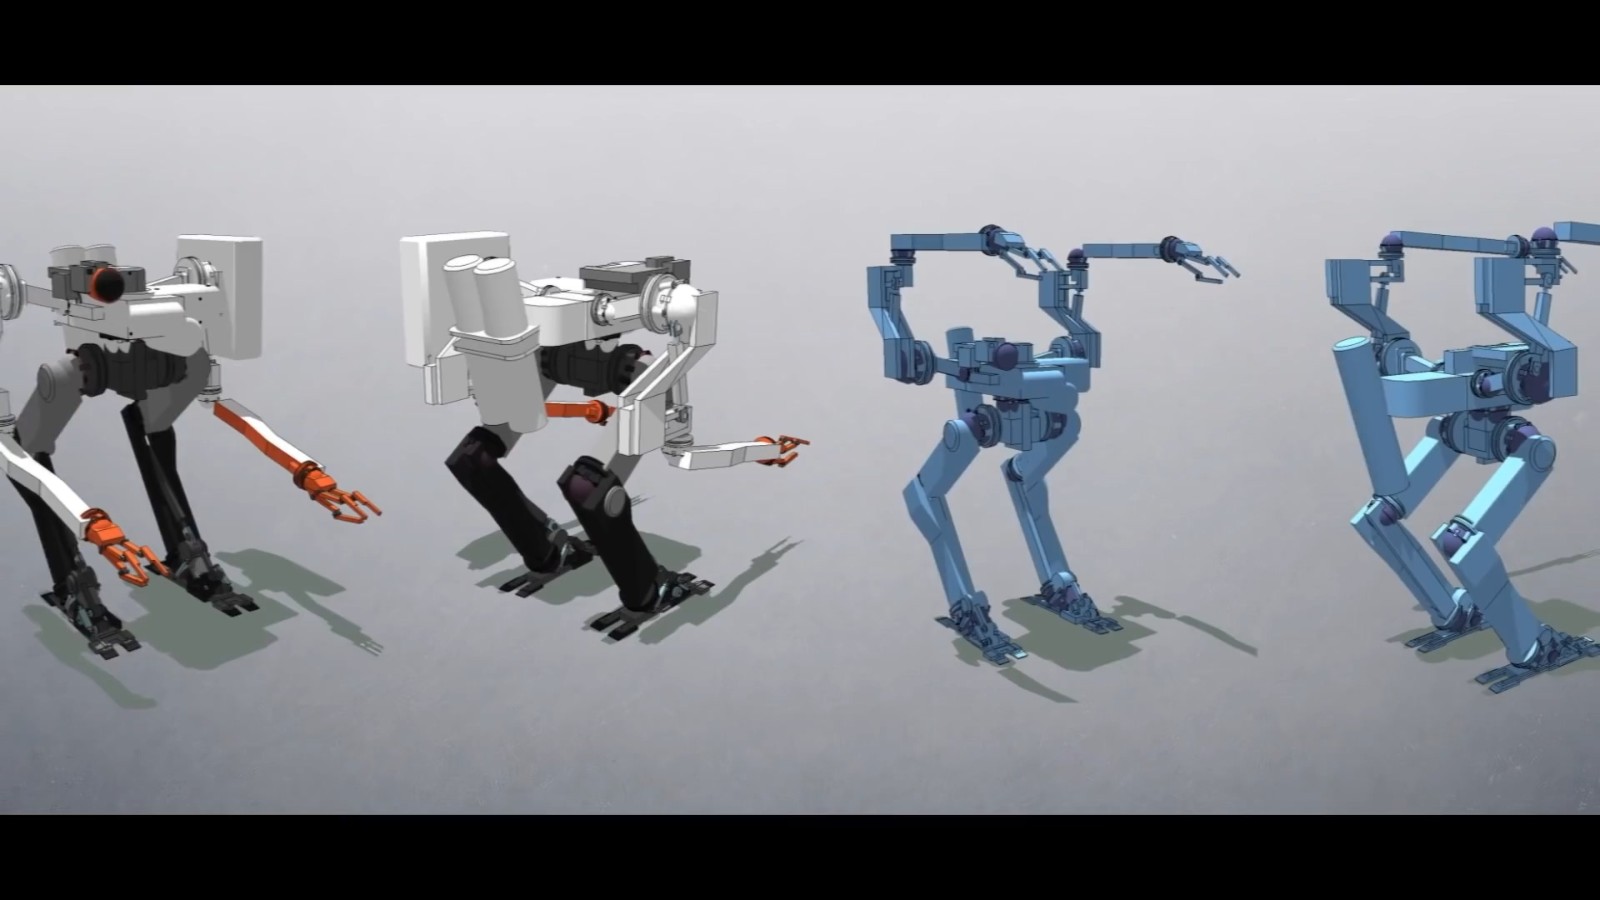 《星空》新开发者视频 伴侣机器人Vasco亮相